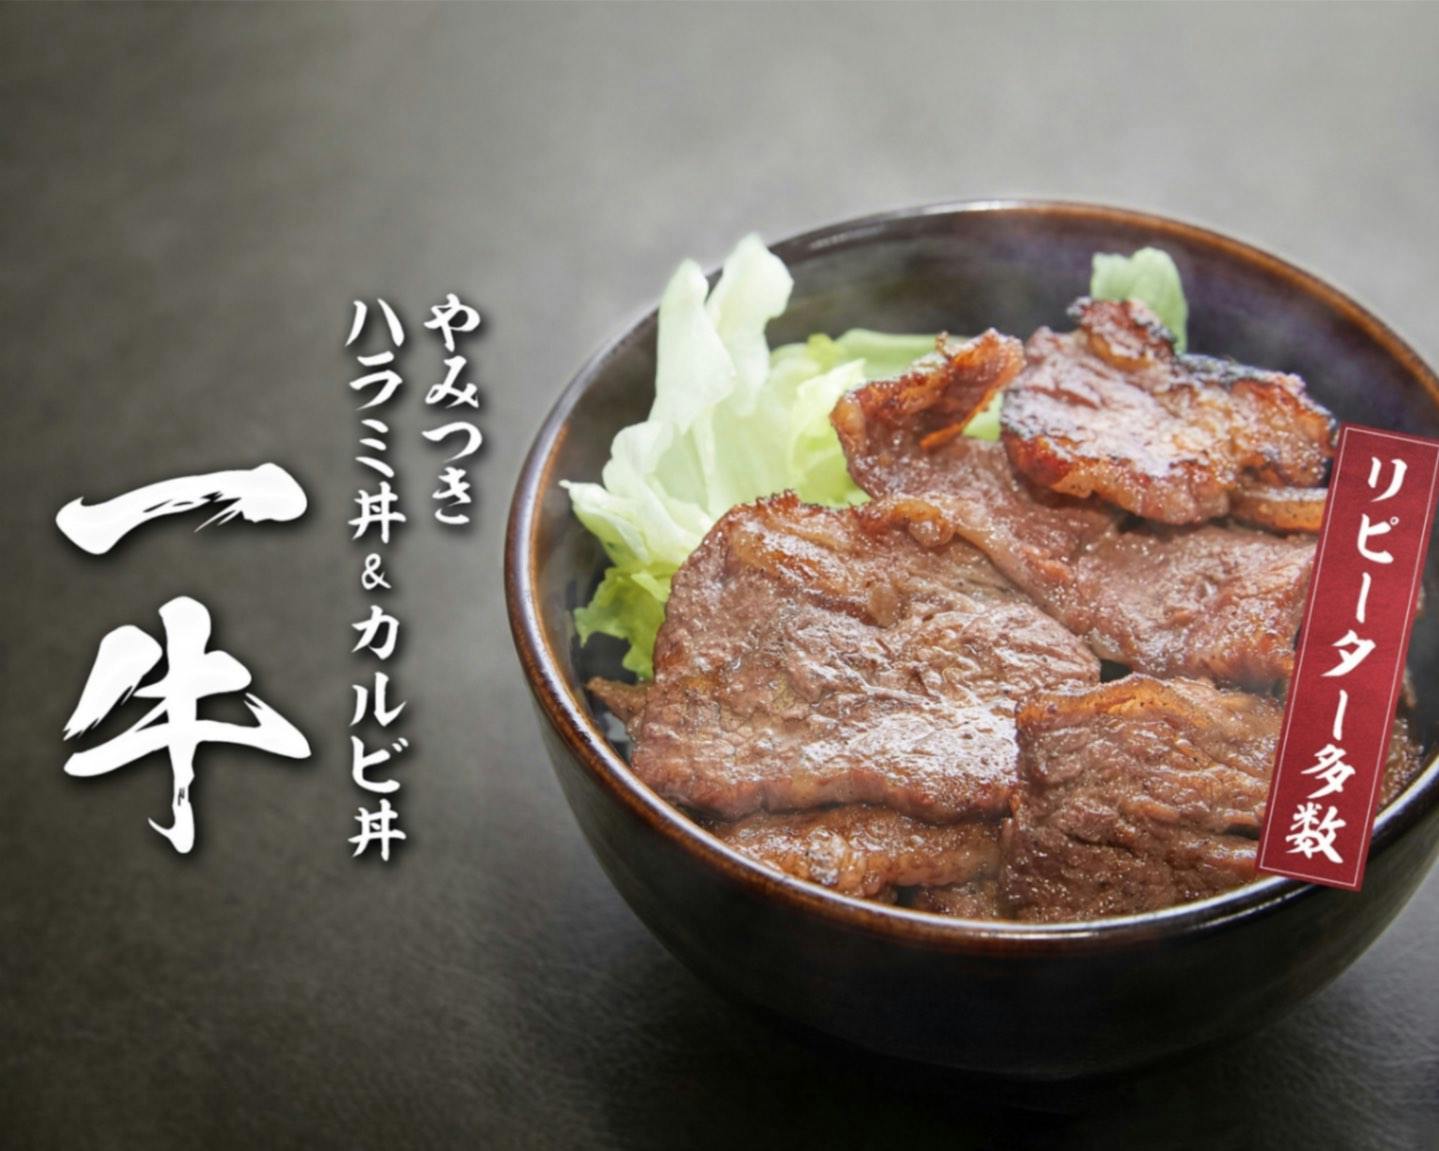 ハラミ丼&カルビ丼「一牛」のブランド画像